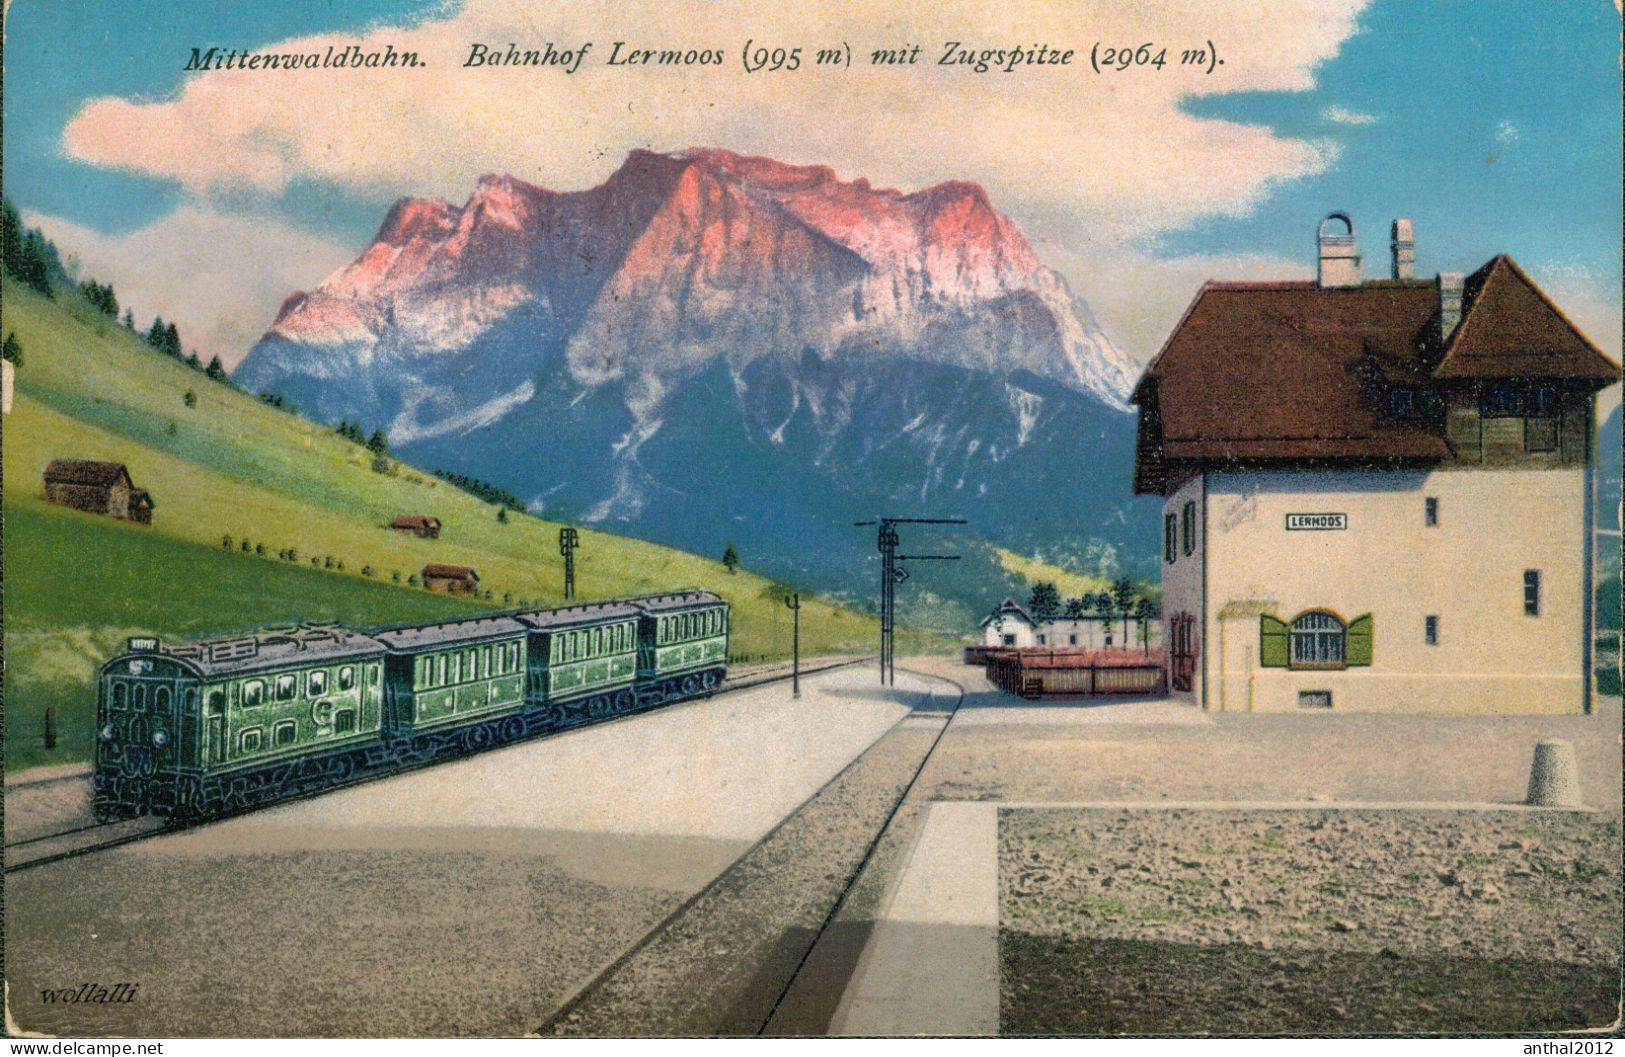 Superrar Bahnhof La Gare Lermoos Österreich Tirol Mit Zug 24.5.1921 Zugspitze - Stations With Trains